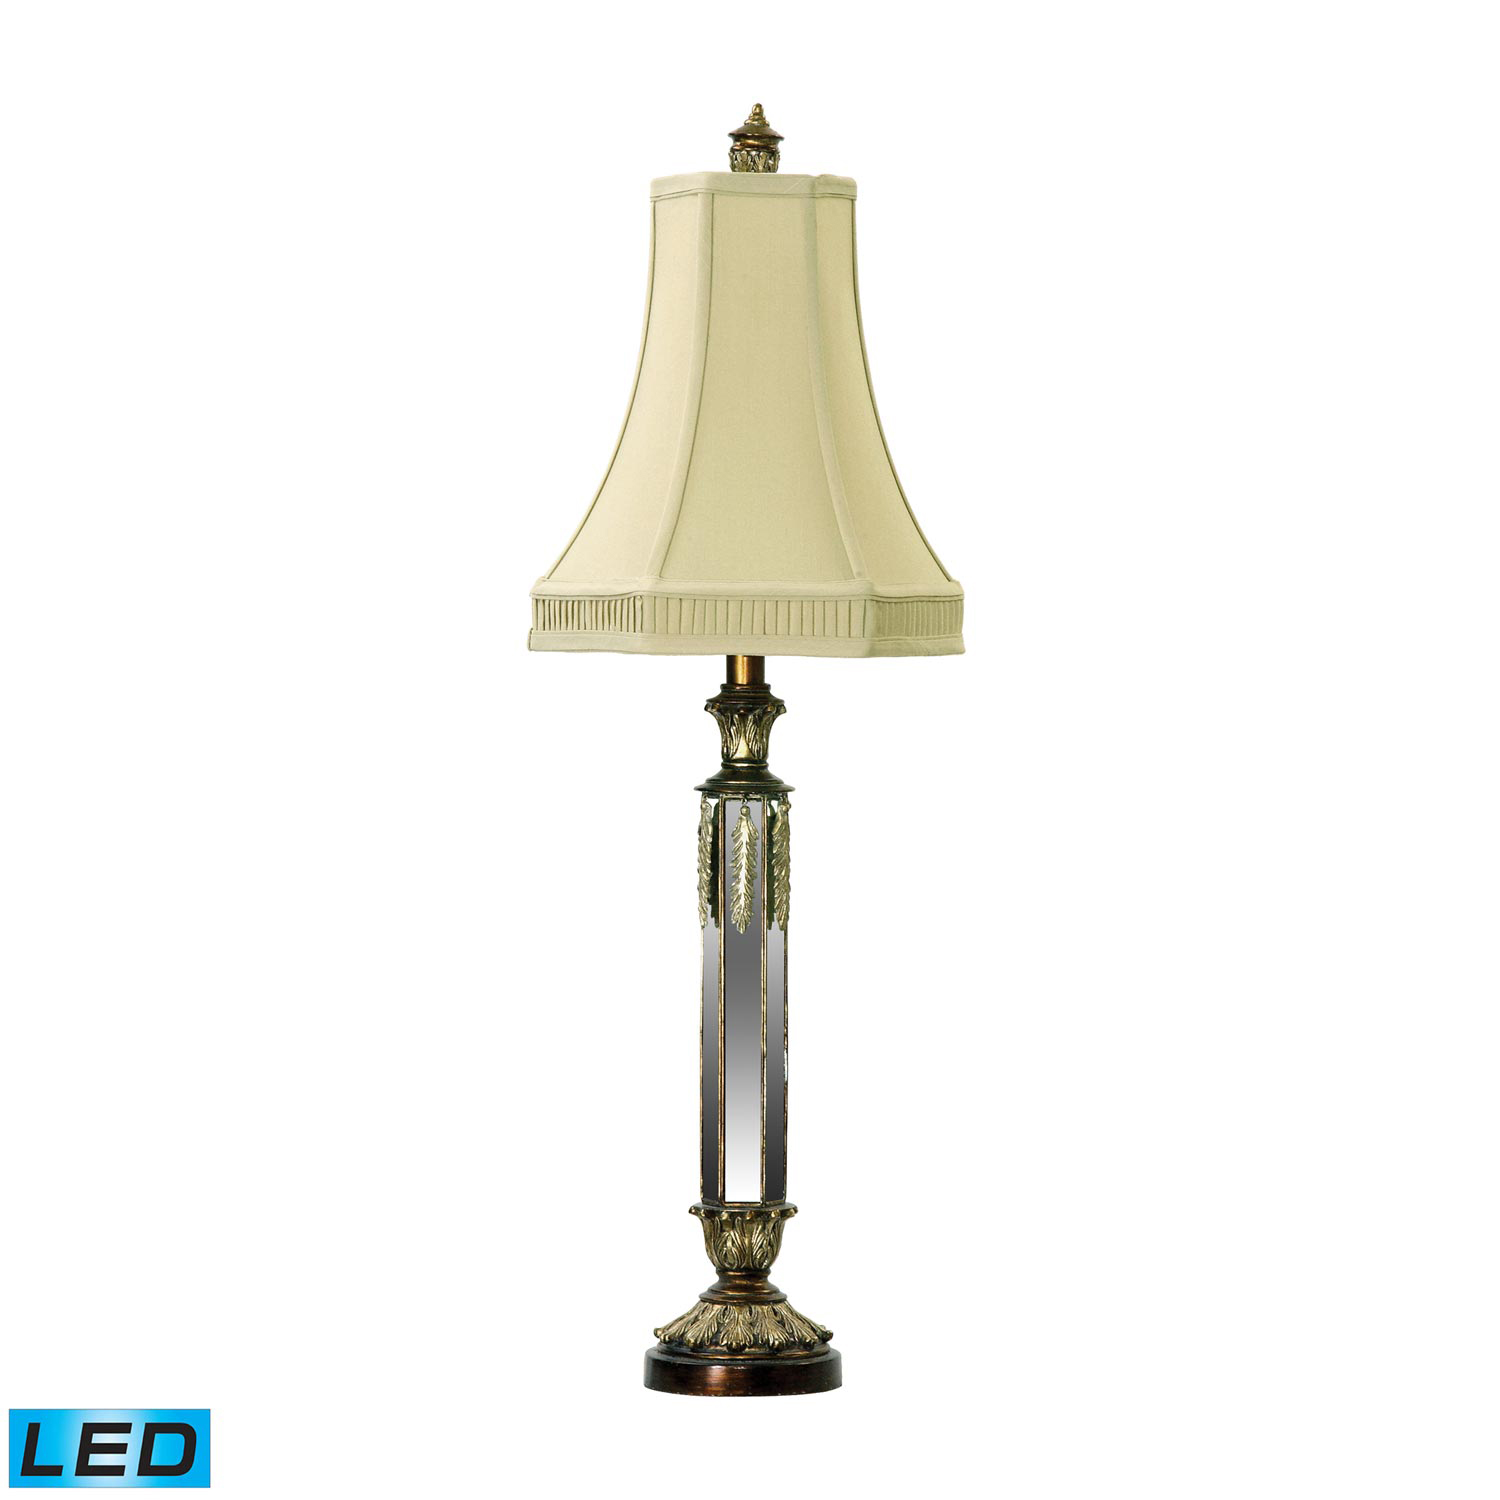 Elk Lighting 93-502-LED Mirrored Table Lamp